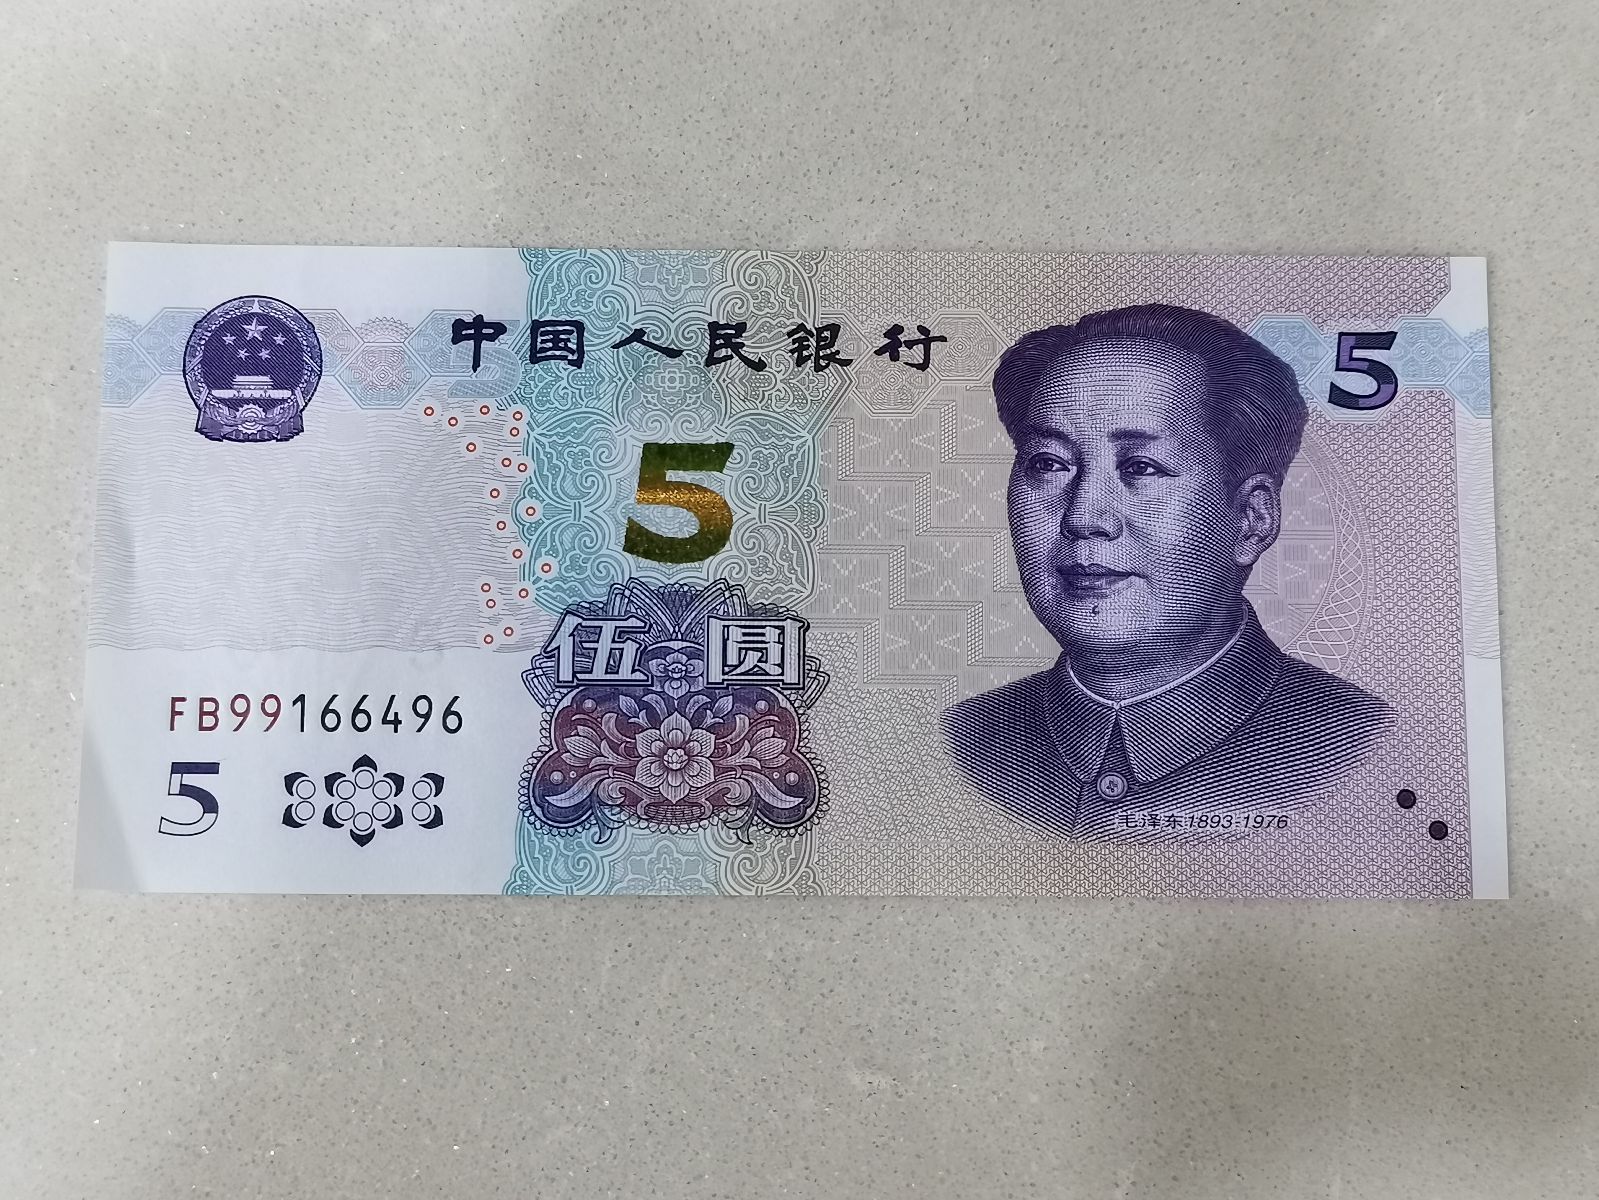 11月5日上午,市民蔡小姐得知新版人民币5元纸币正式发行后,就到中行